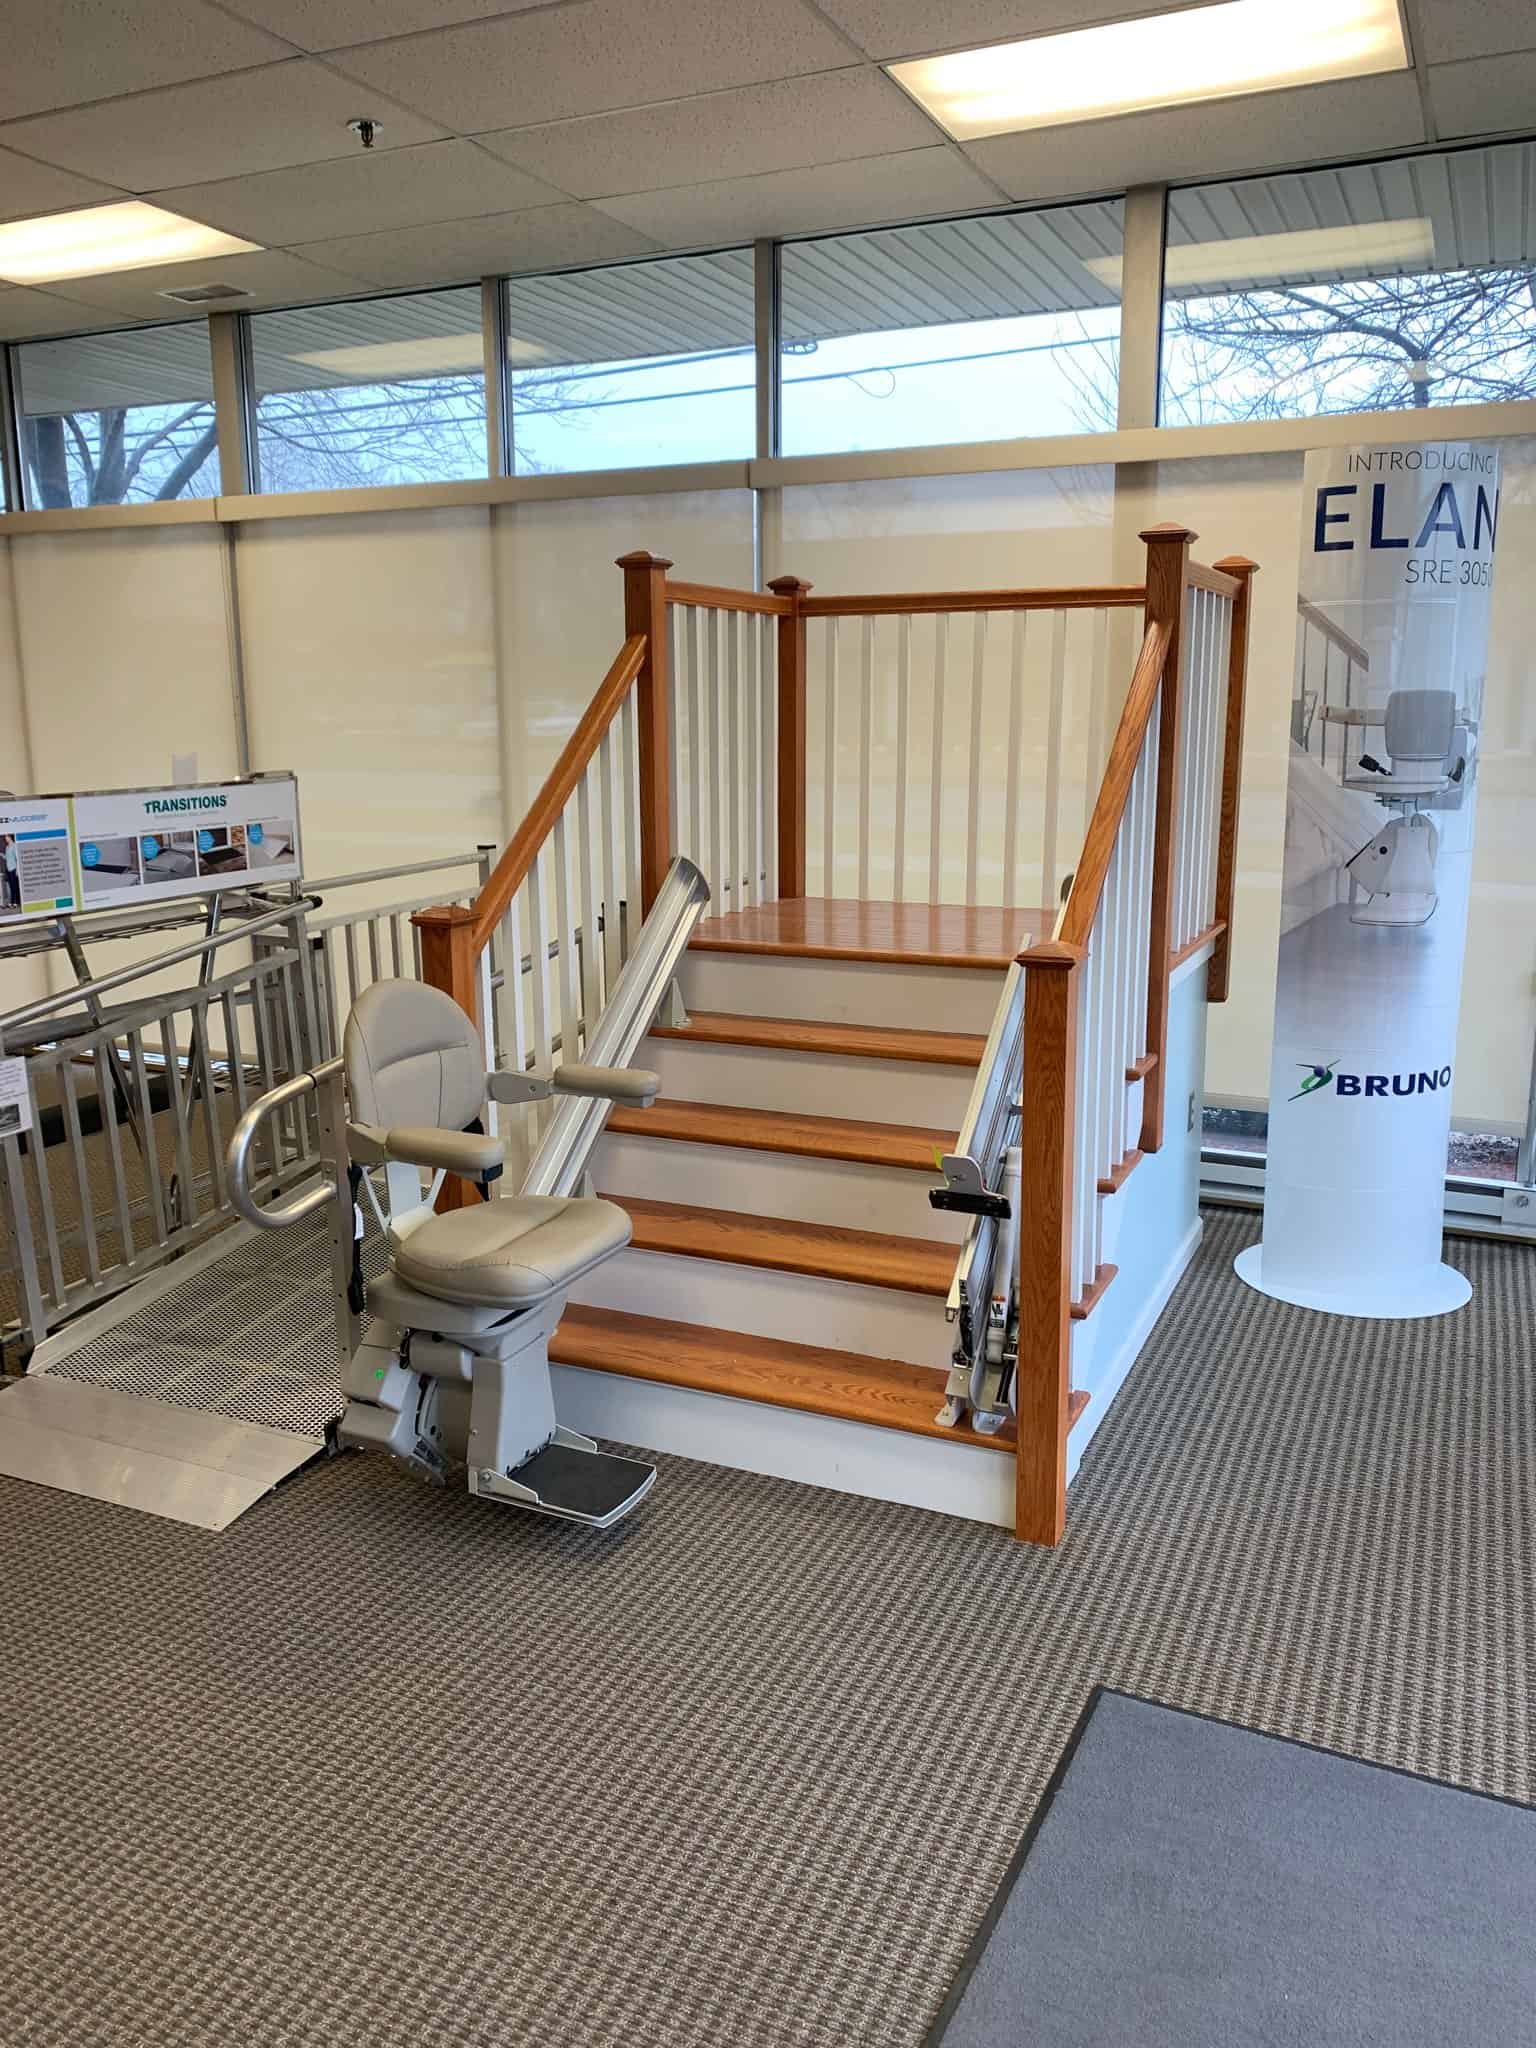 Bruno Elite stair lift in Hartford, CT showroom